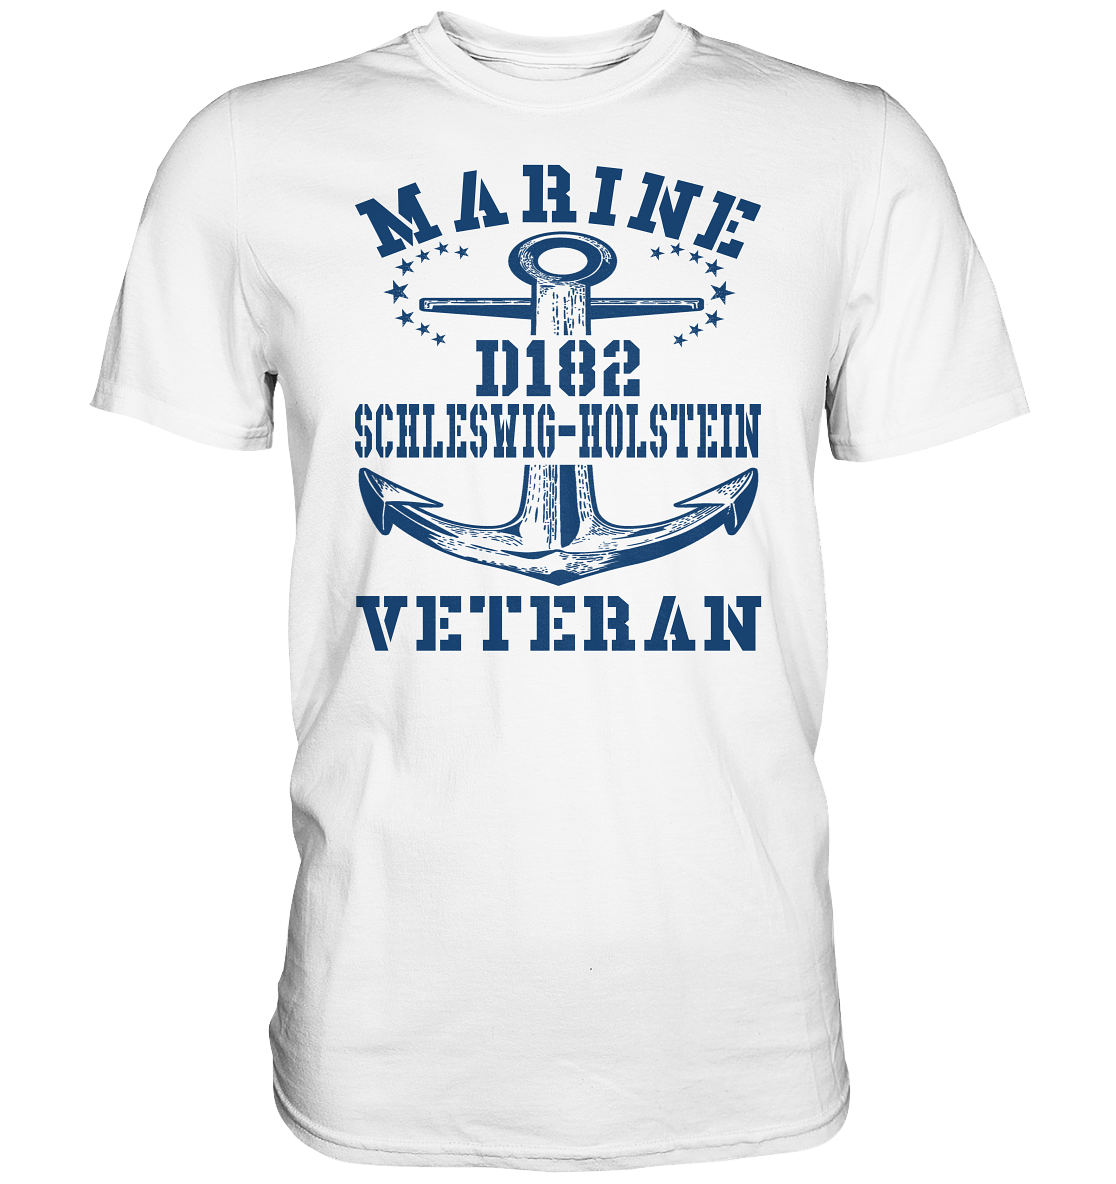 Zerstörer D182 SCHLESWIG-HOLSTEIN Marine Veteran - Premium Shirt